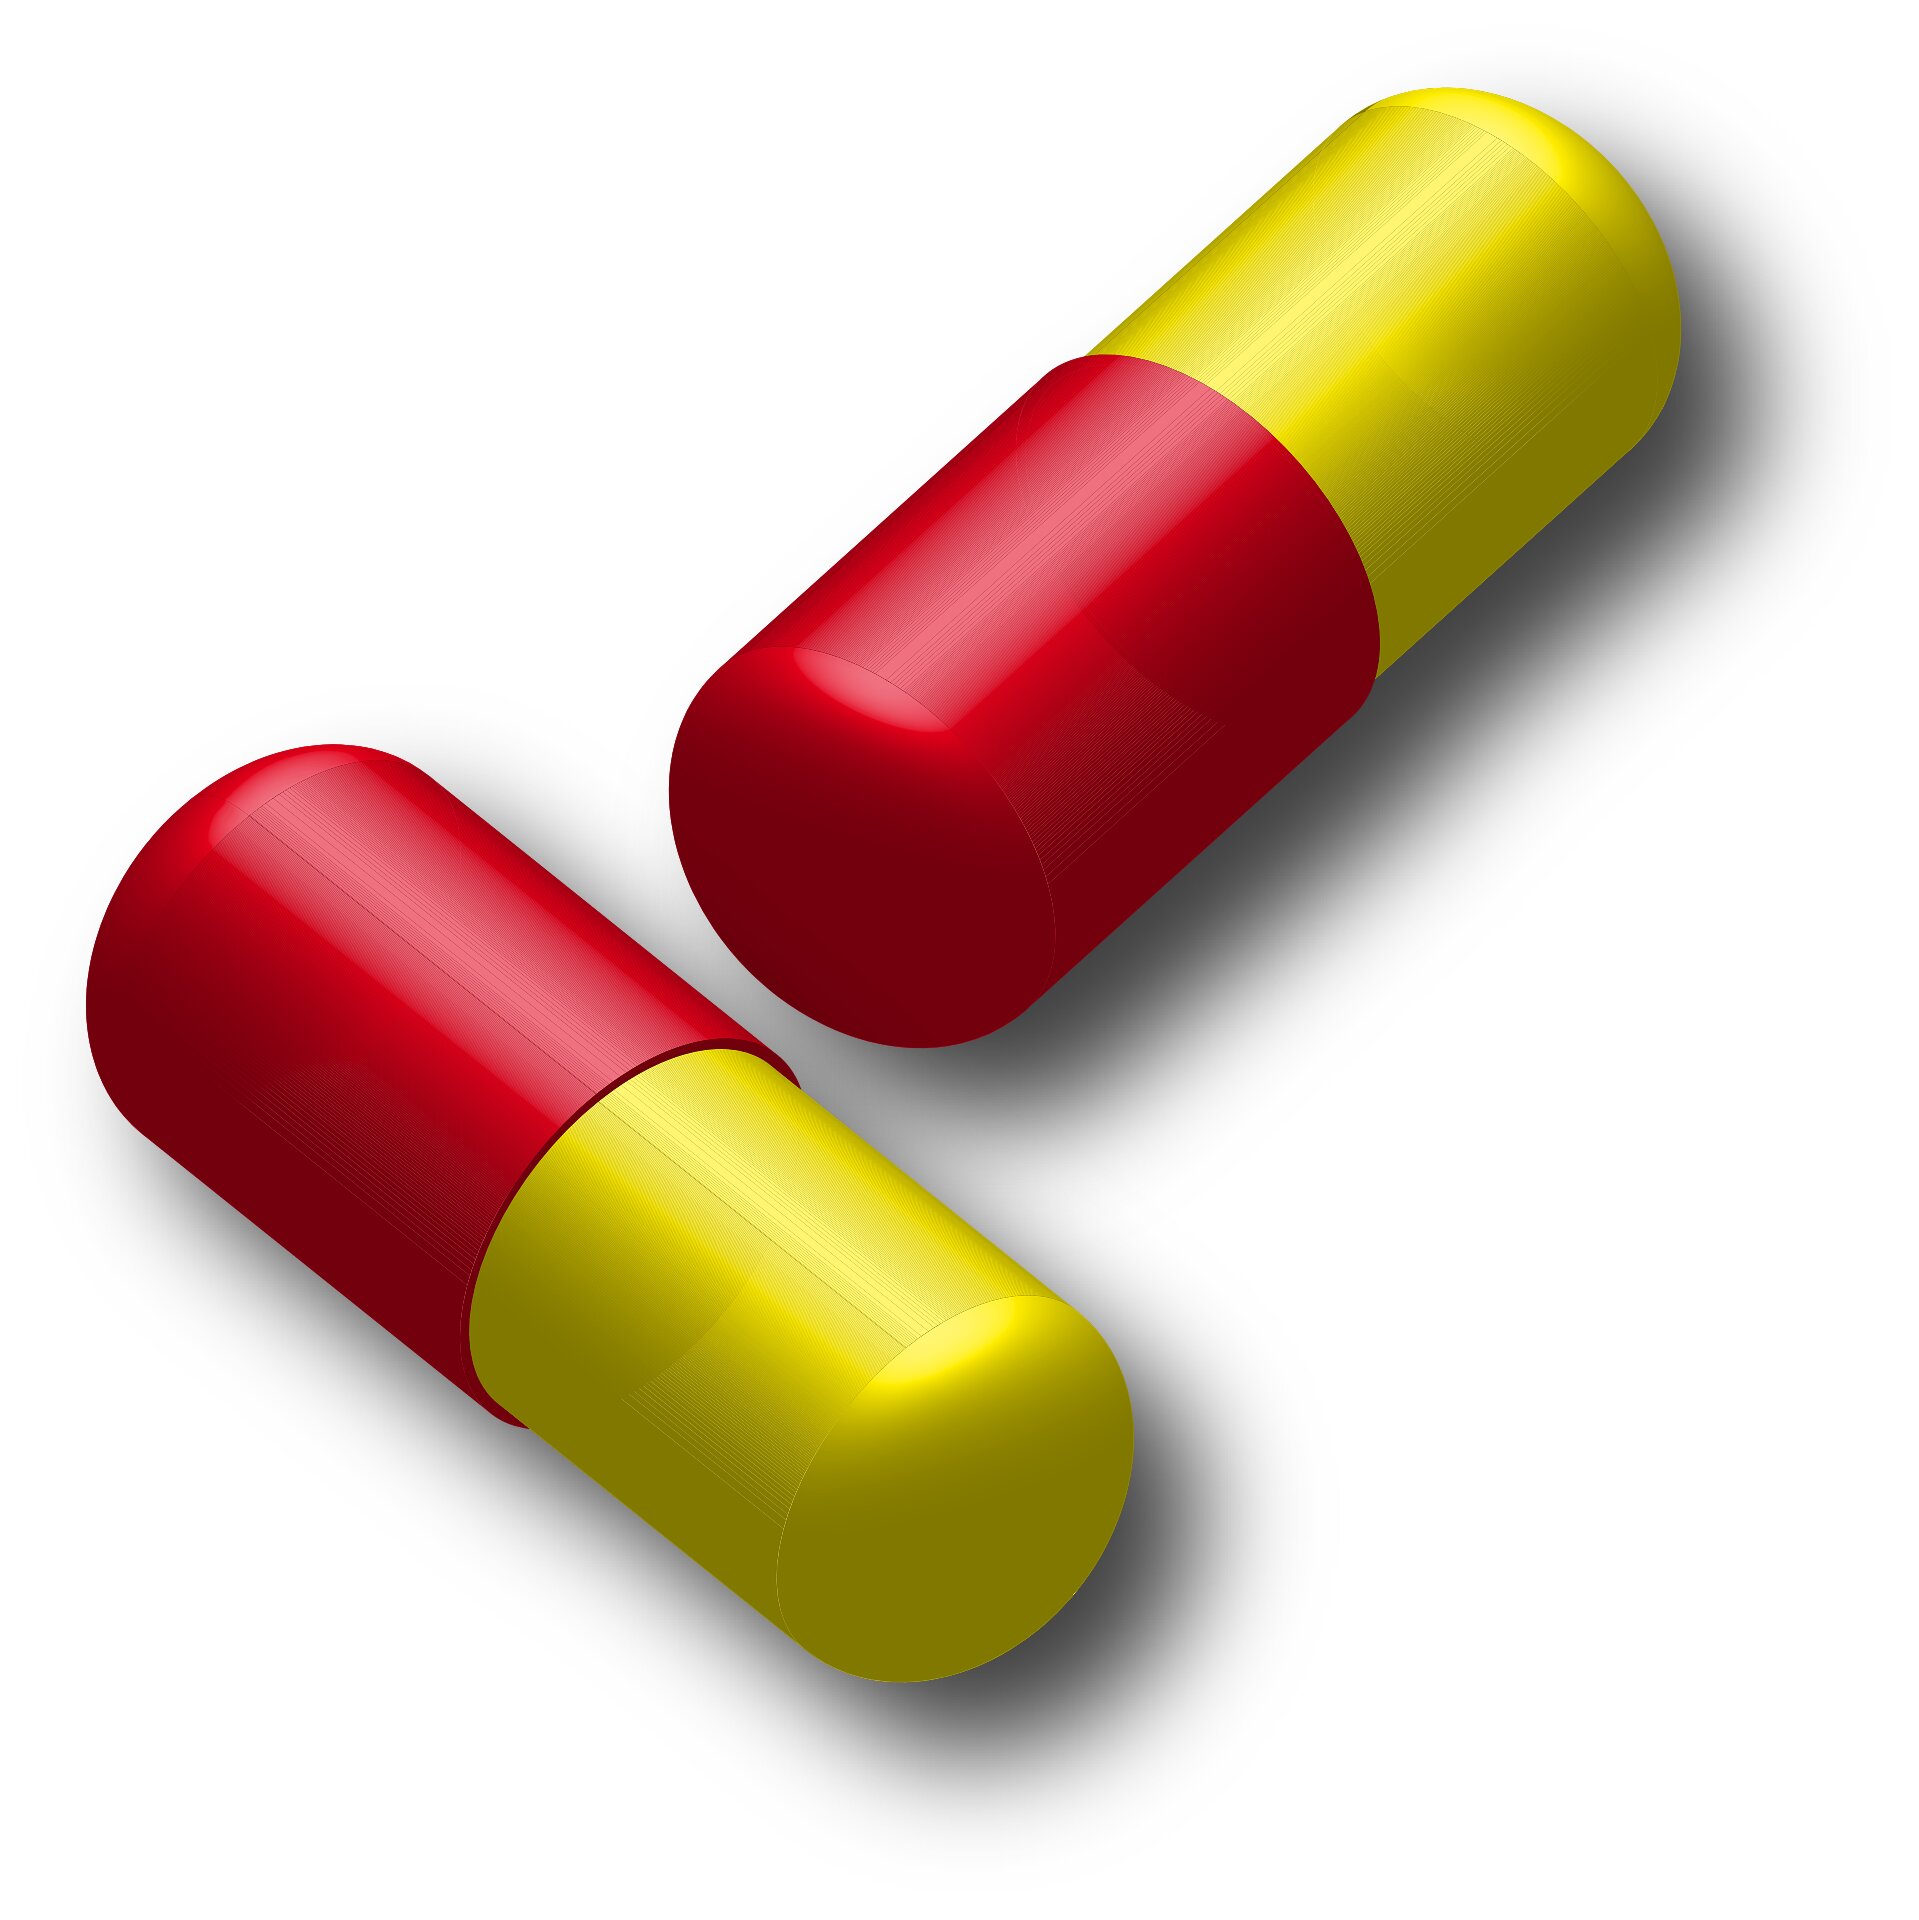 UK government media risks spurning regulations on promotion of prescription medications